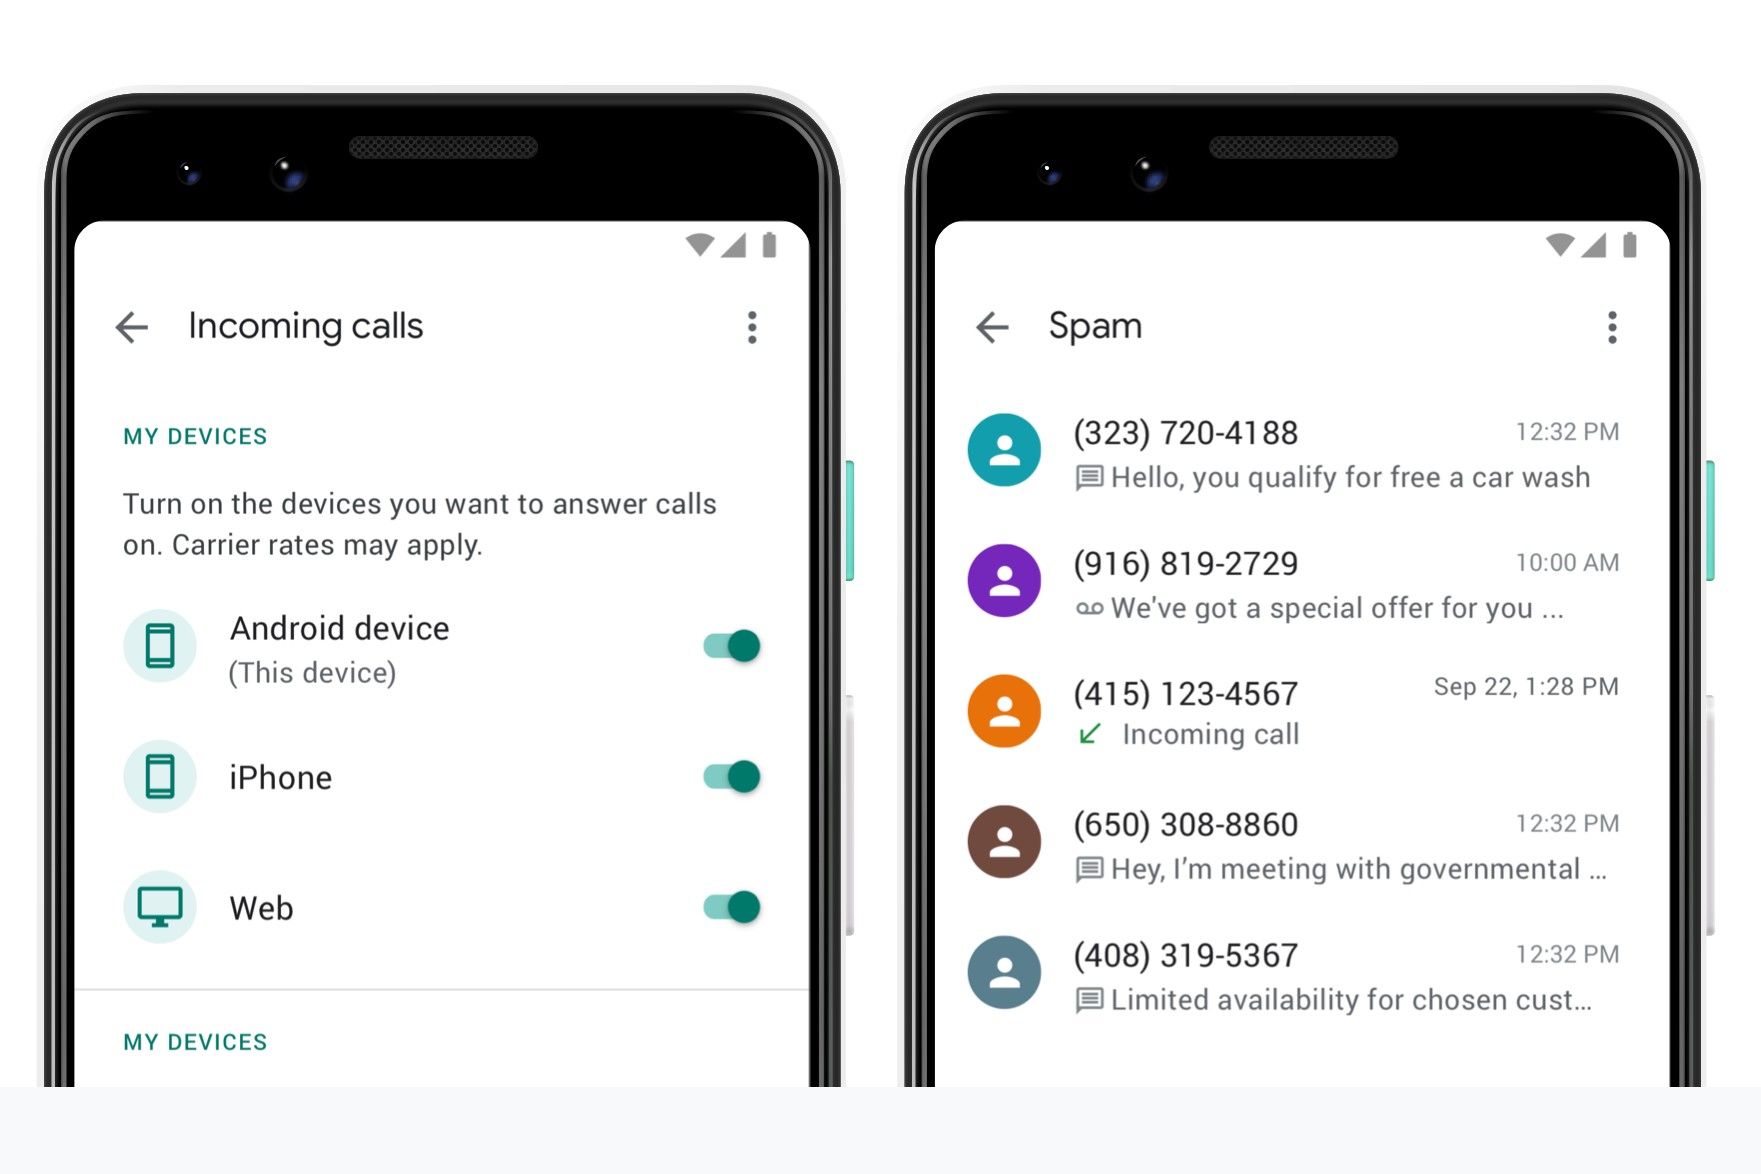 Telas do Google Voice para rotear chamadas e bloquear spam.